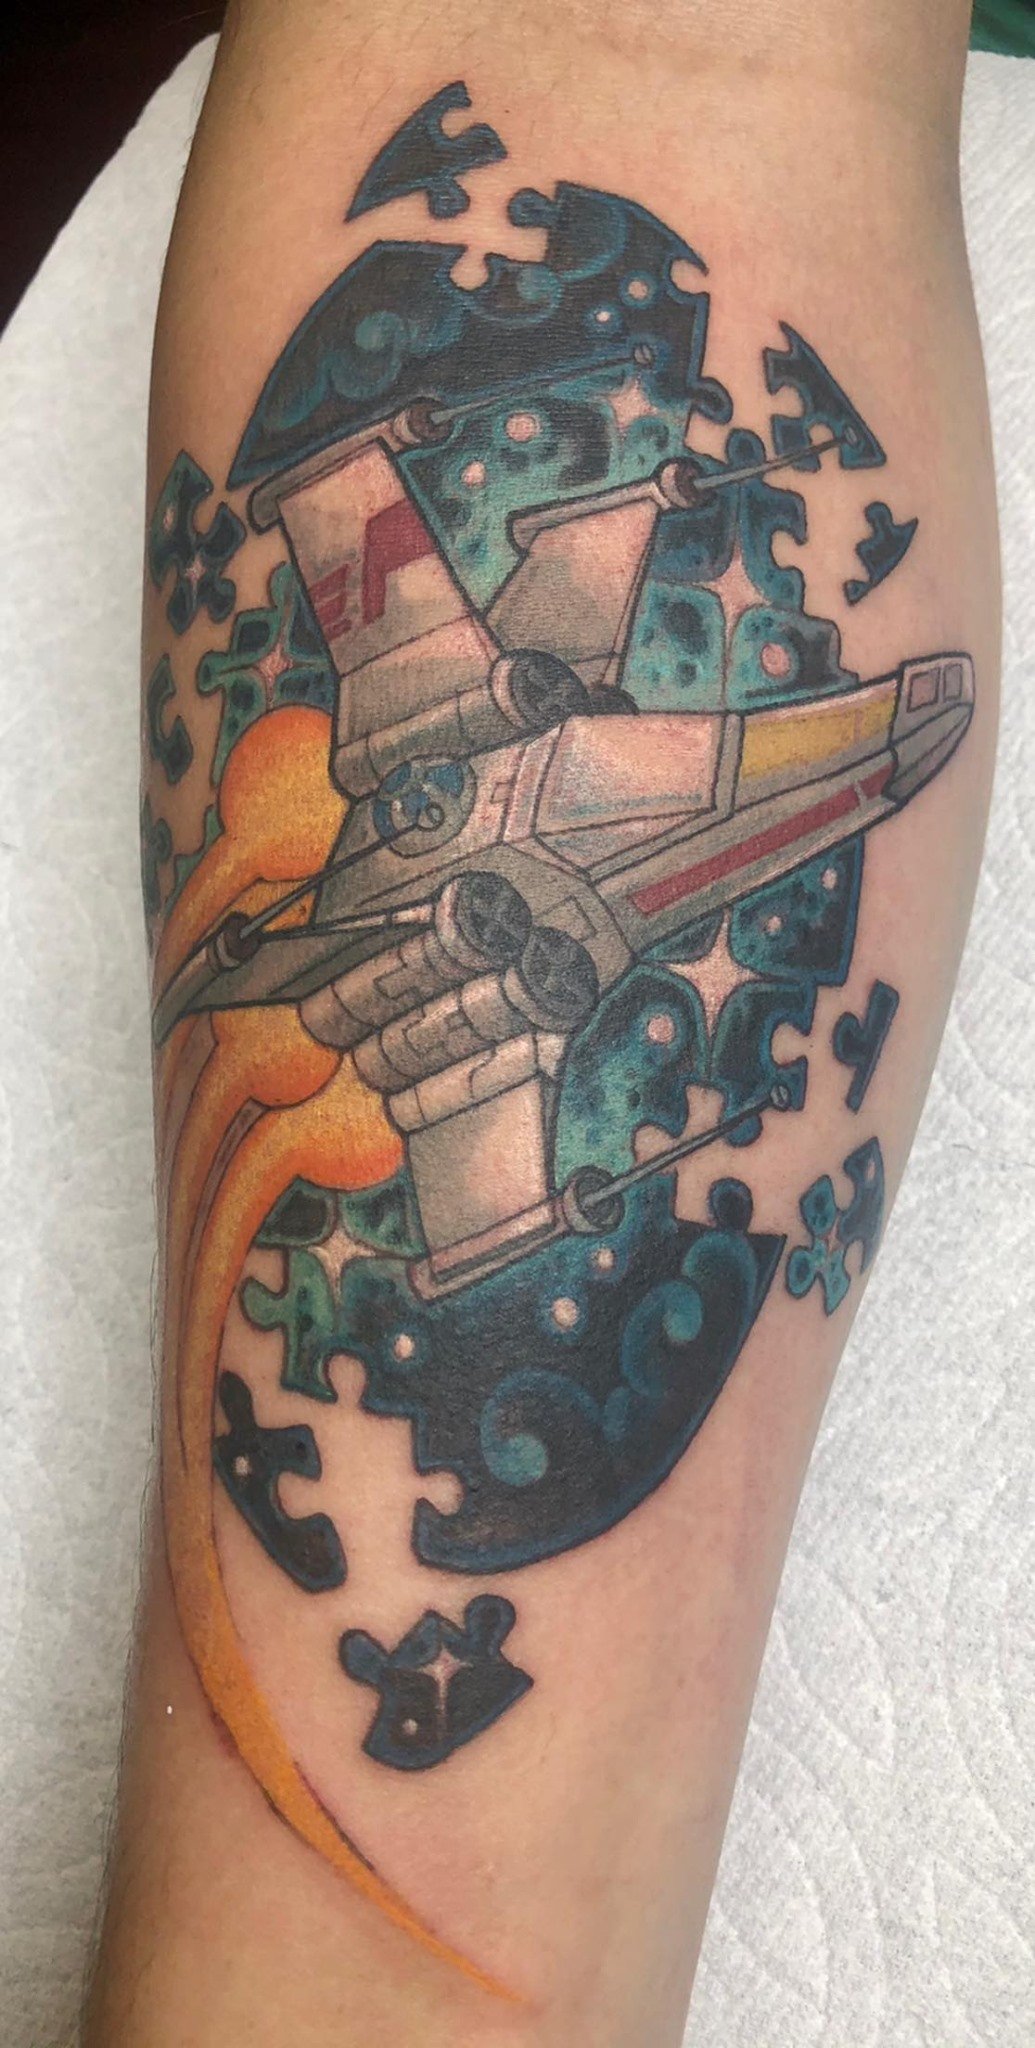 X wing Fighter Pilot/autism awareness tattoo